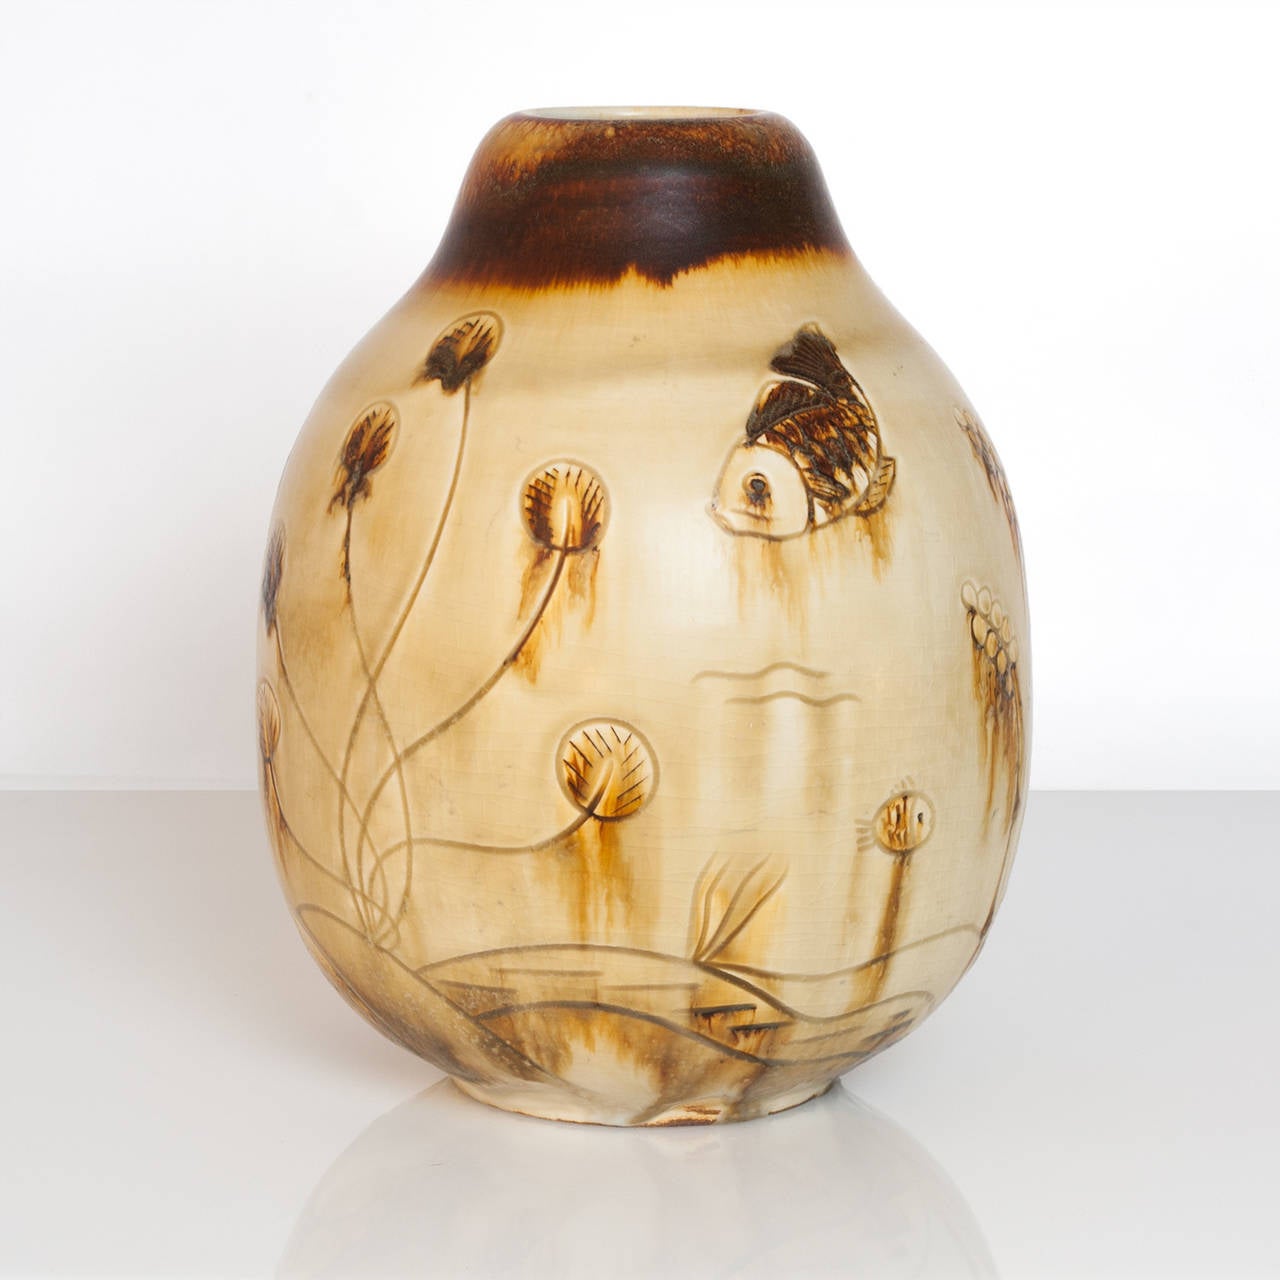 Große skandinavisch-moderne einzigartige Studio-Vase aus Keramik von Gertrud Lonegren für Rorstrand. Diese Vase stellt eine Unterwasserszene mit verschiedenen Fischen und Pflanzen dar. Ihre Werke sind bekannt für ihre strukturierten Oberflächen in